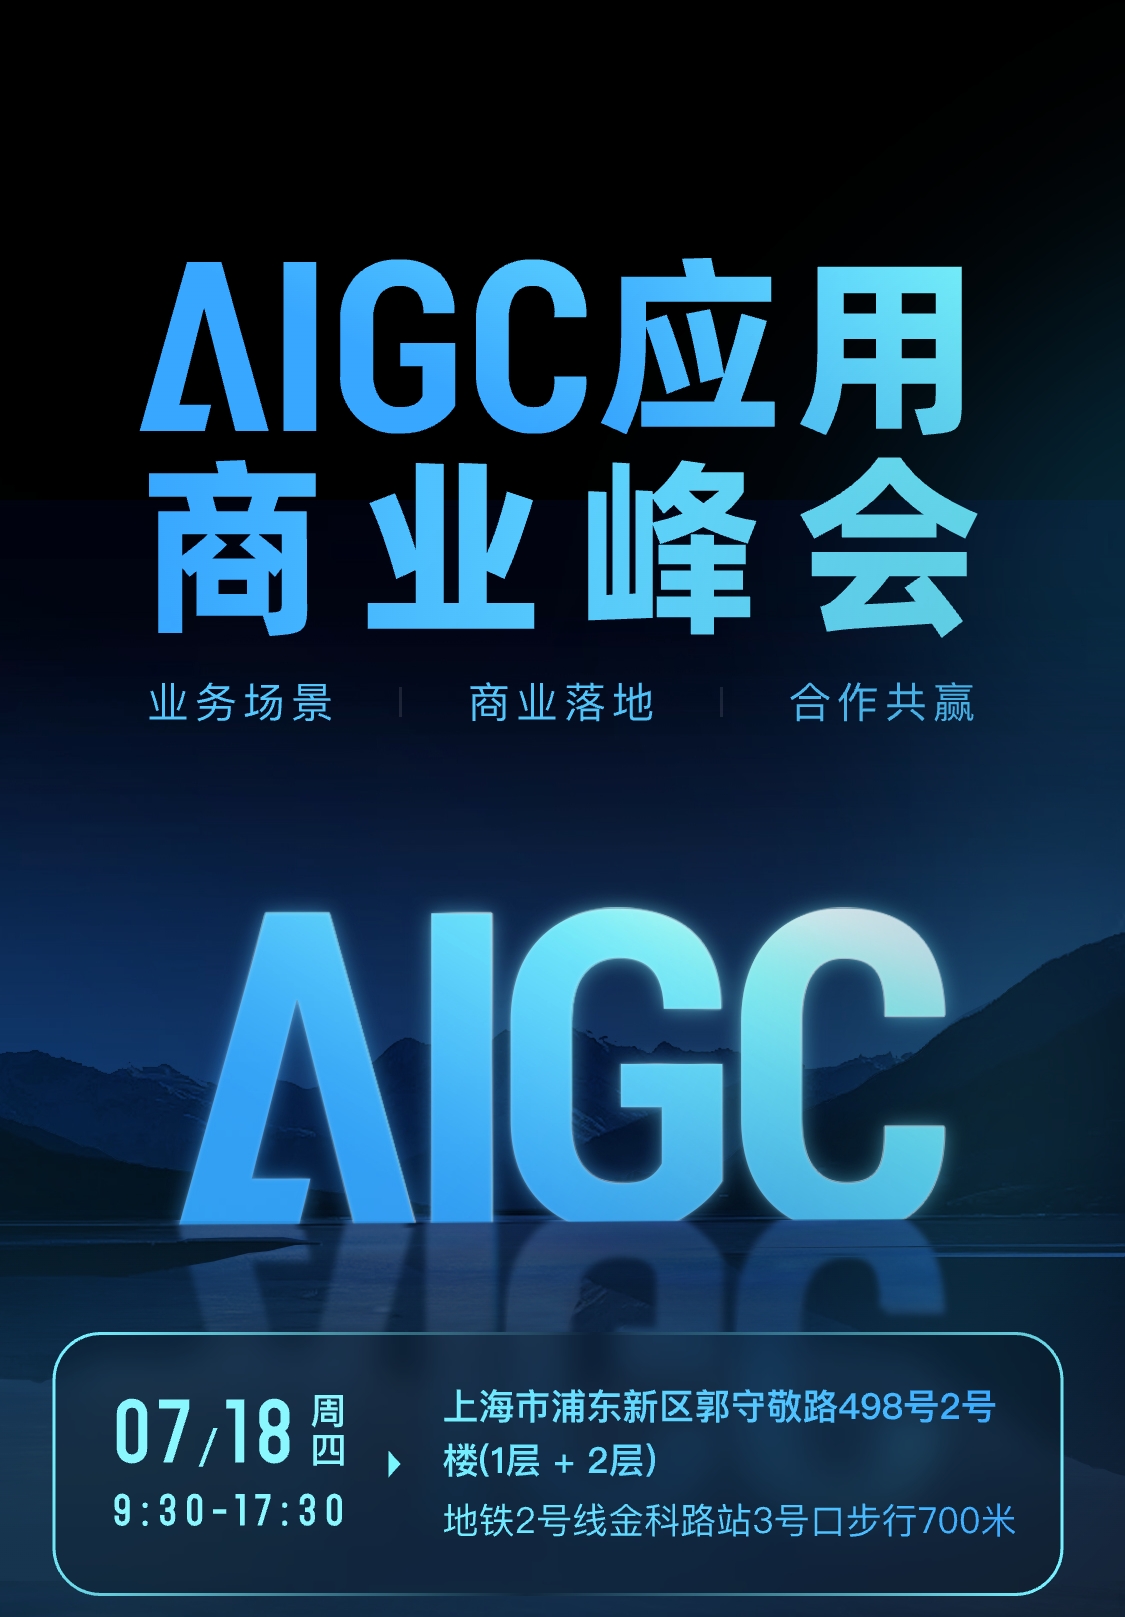 AIGC应用商业峰会